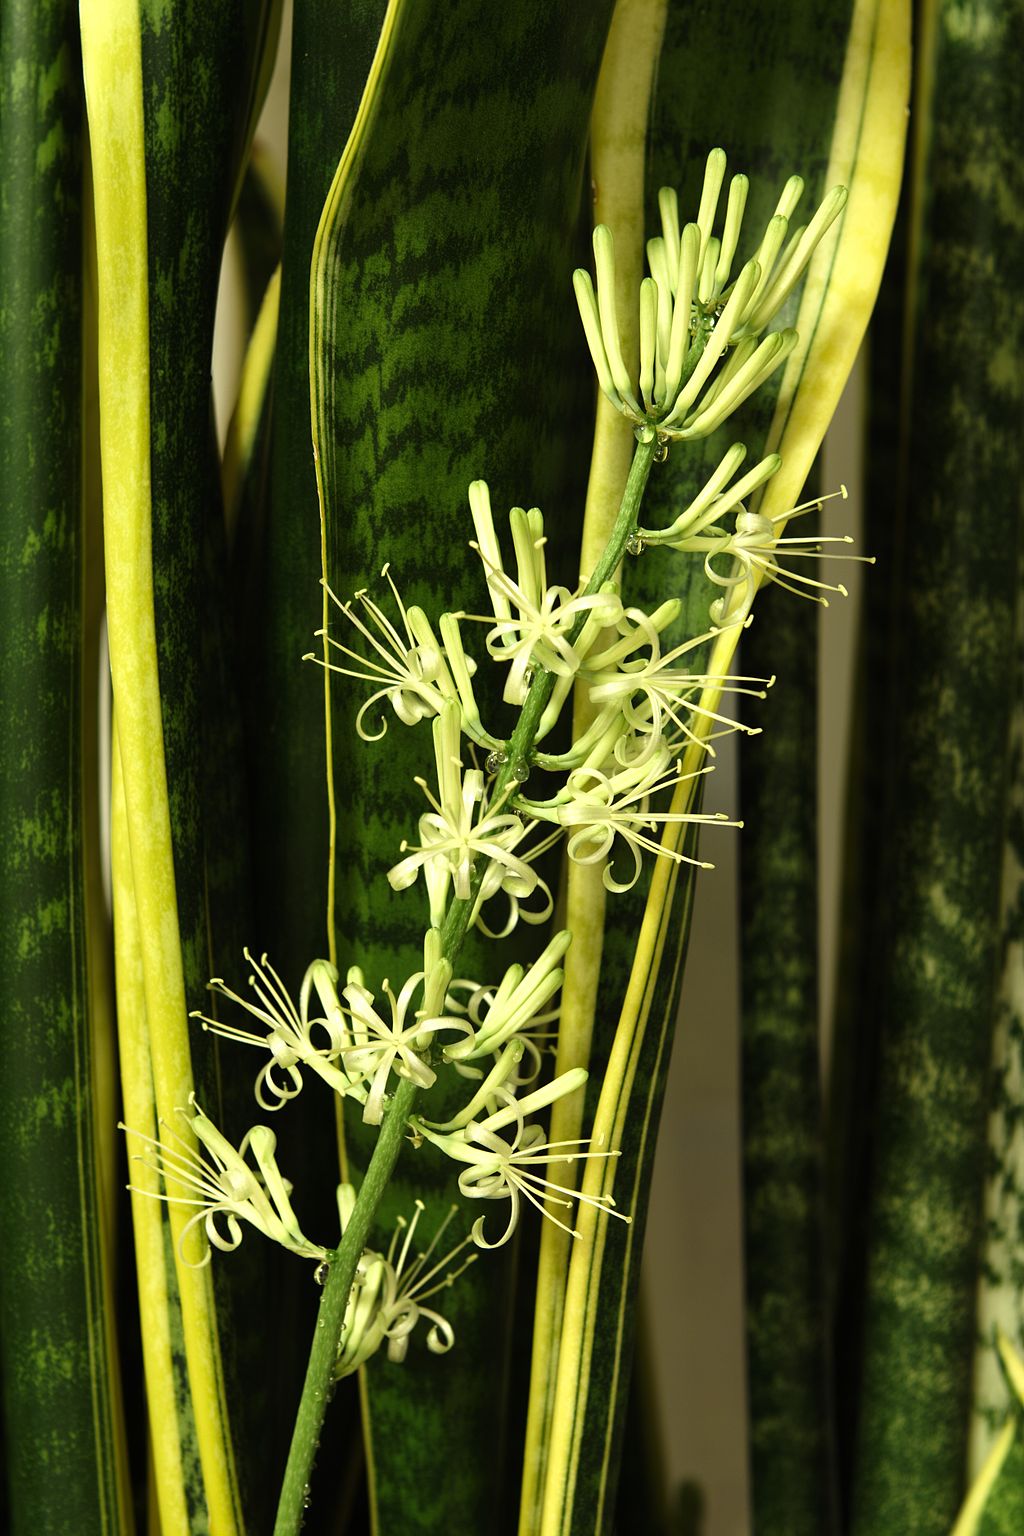 Sansevieria trifasciata's flowers